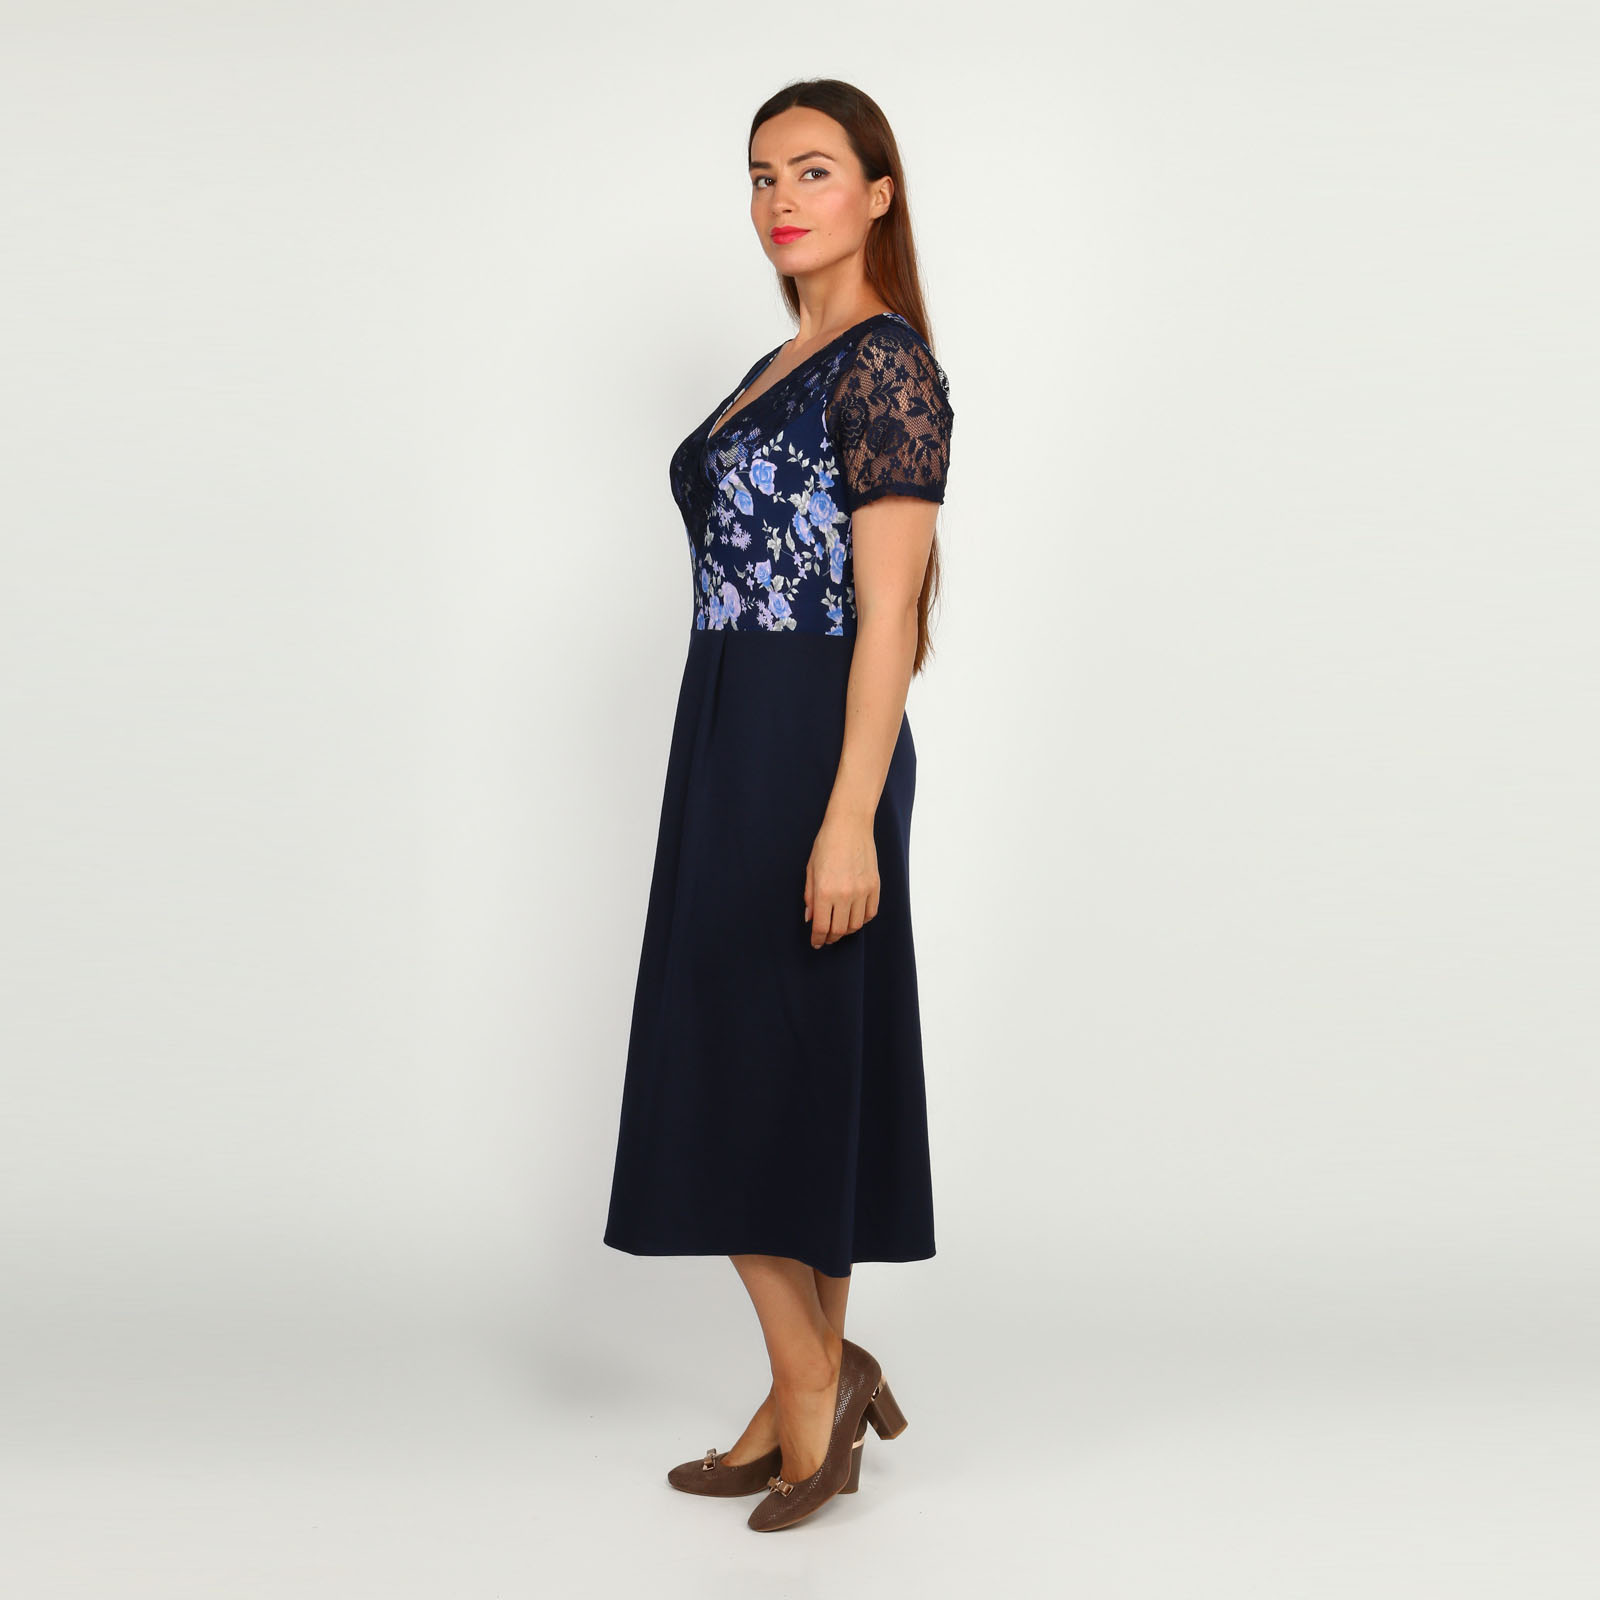 Платье с гипюровыми вставками и принтом Bianka Modeno, размер 54, цвет синий - фото 3